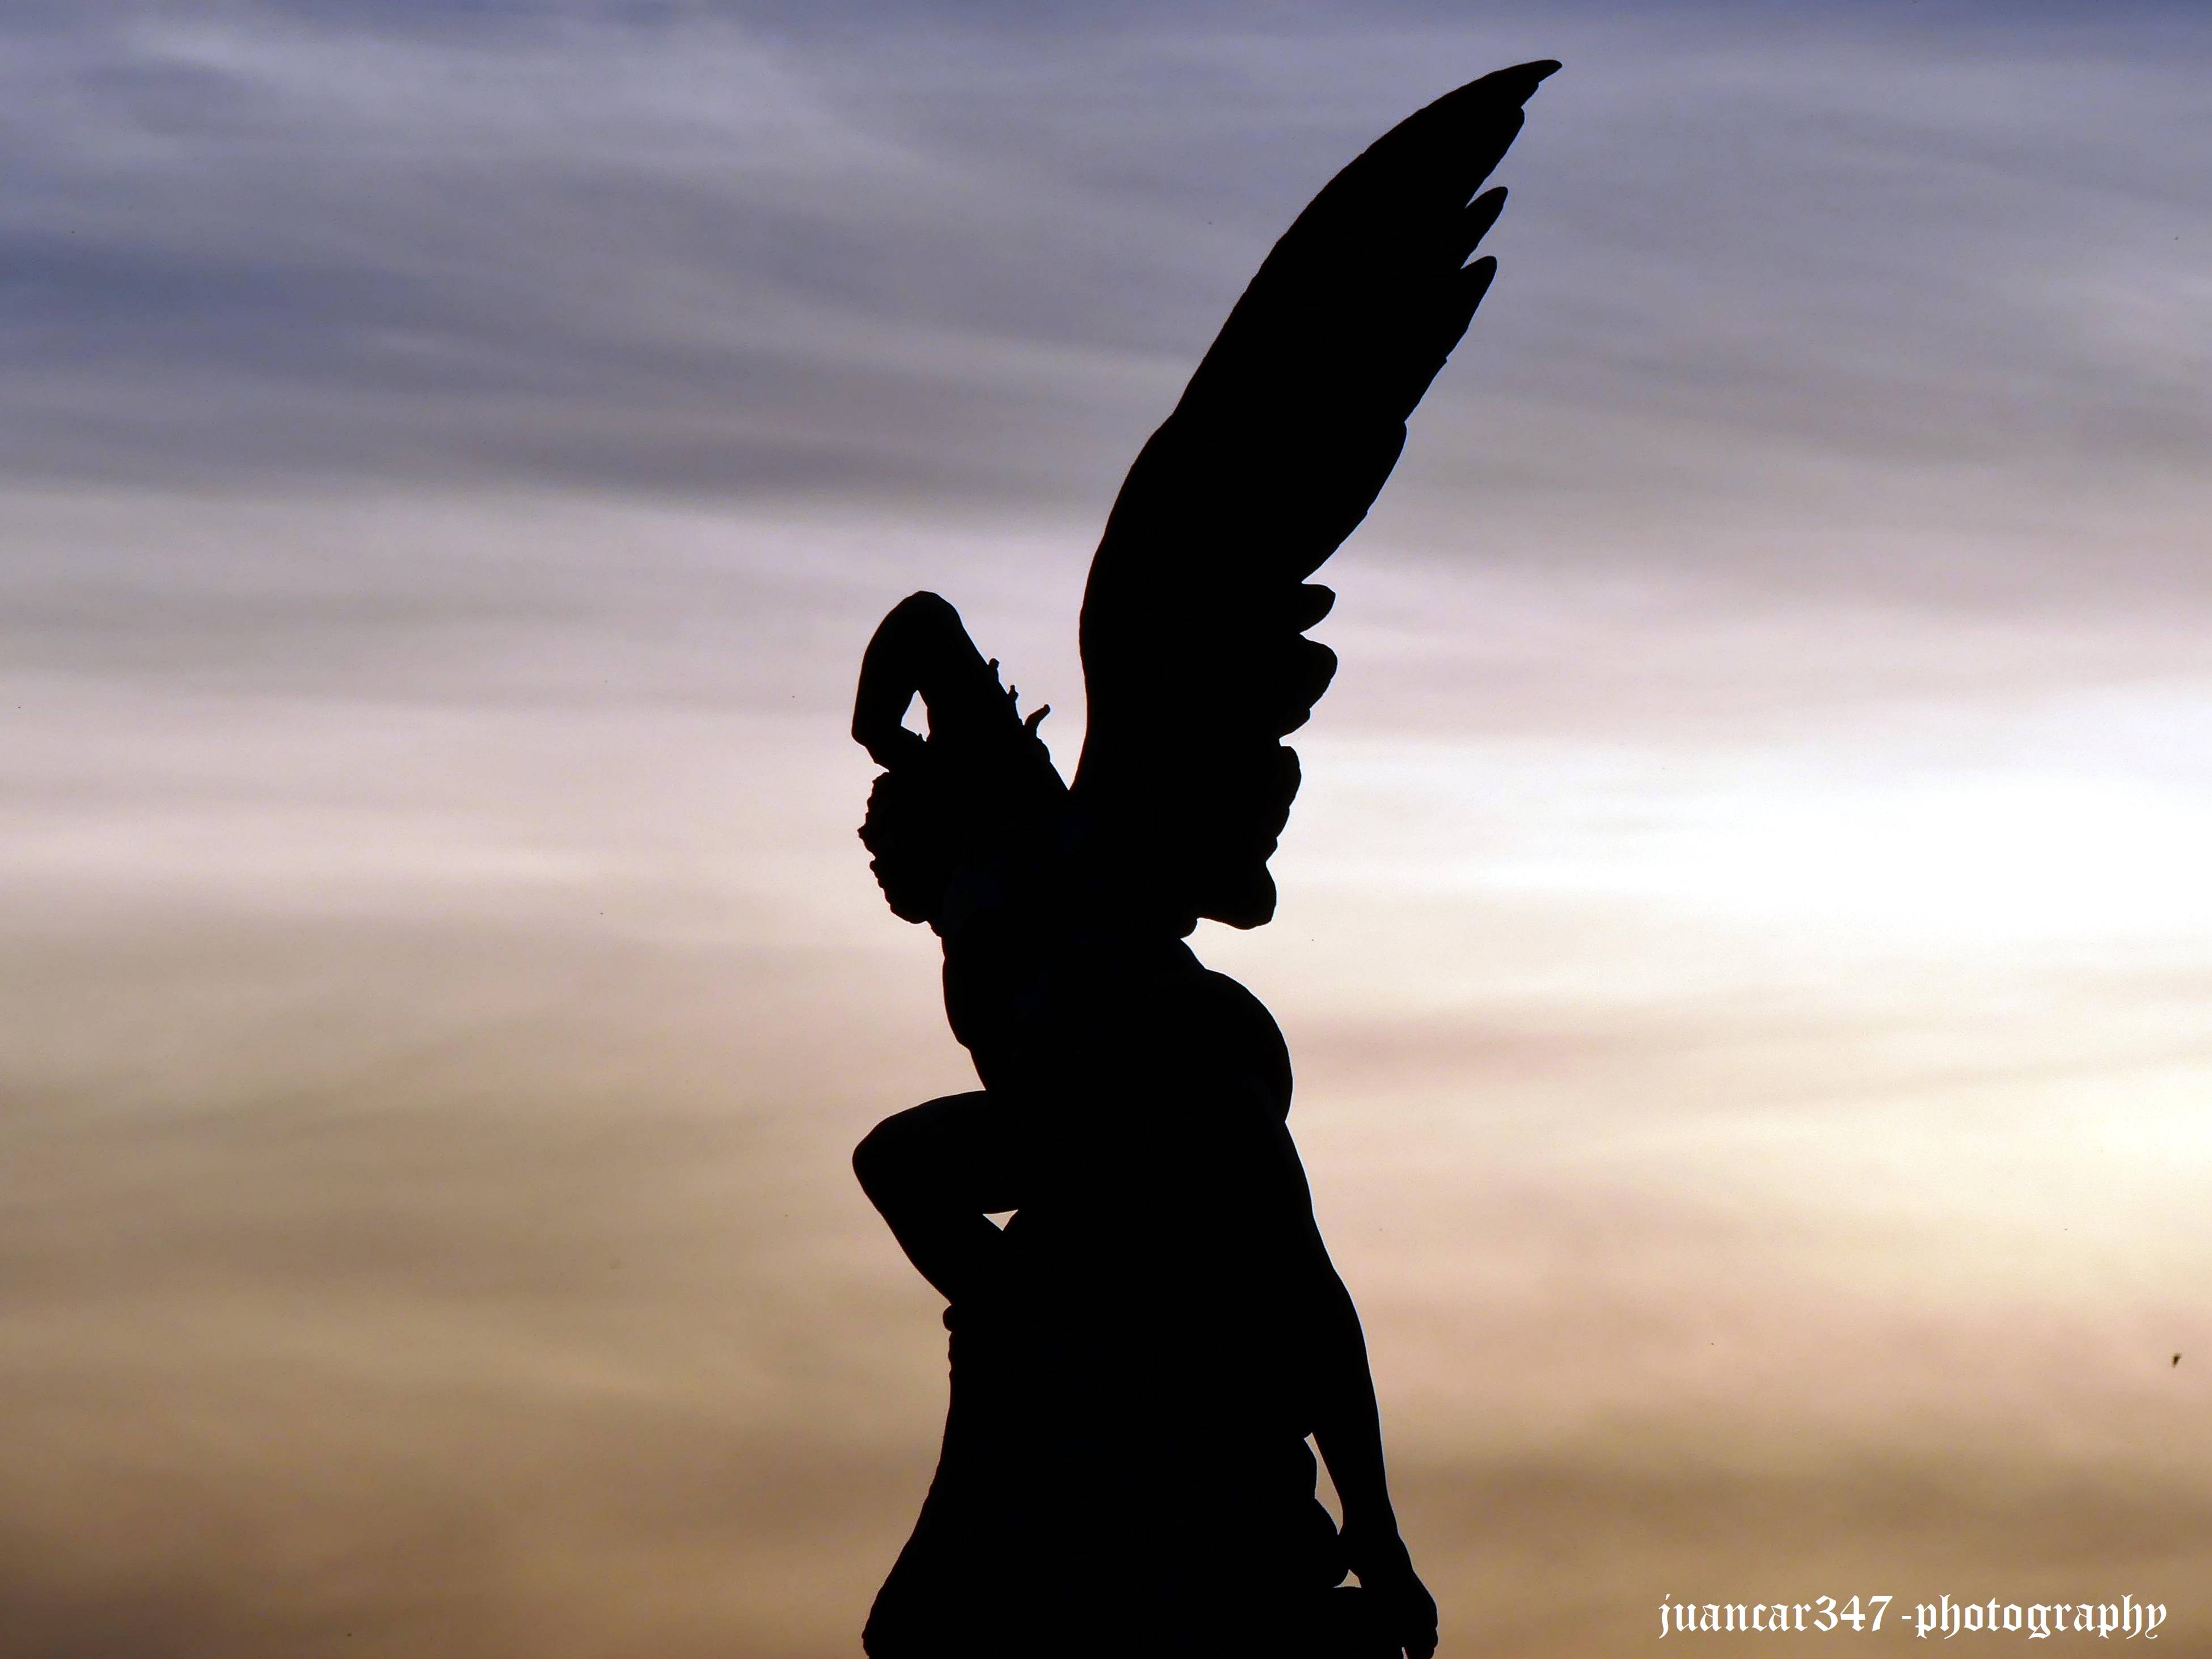 Secrets of Madrid: the Fallen Angel statue